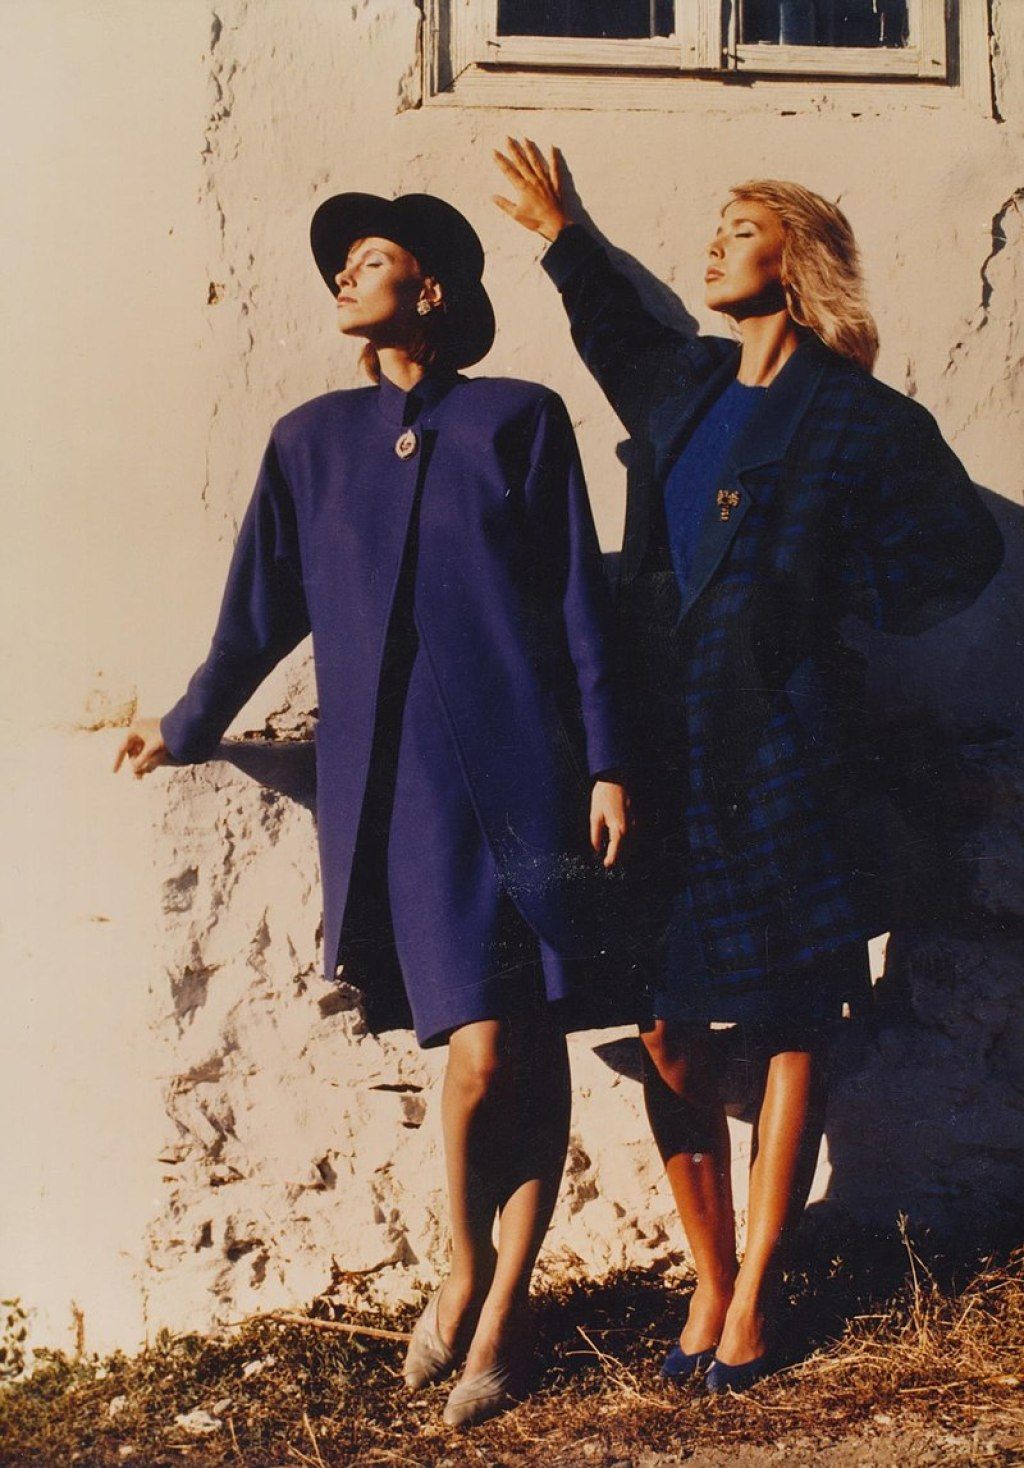 Prvi maj modelos pirot con chaquetas estructuradas con hombreras acolchadas, moda de los años 80